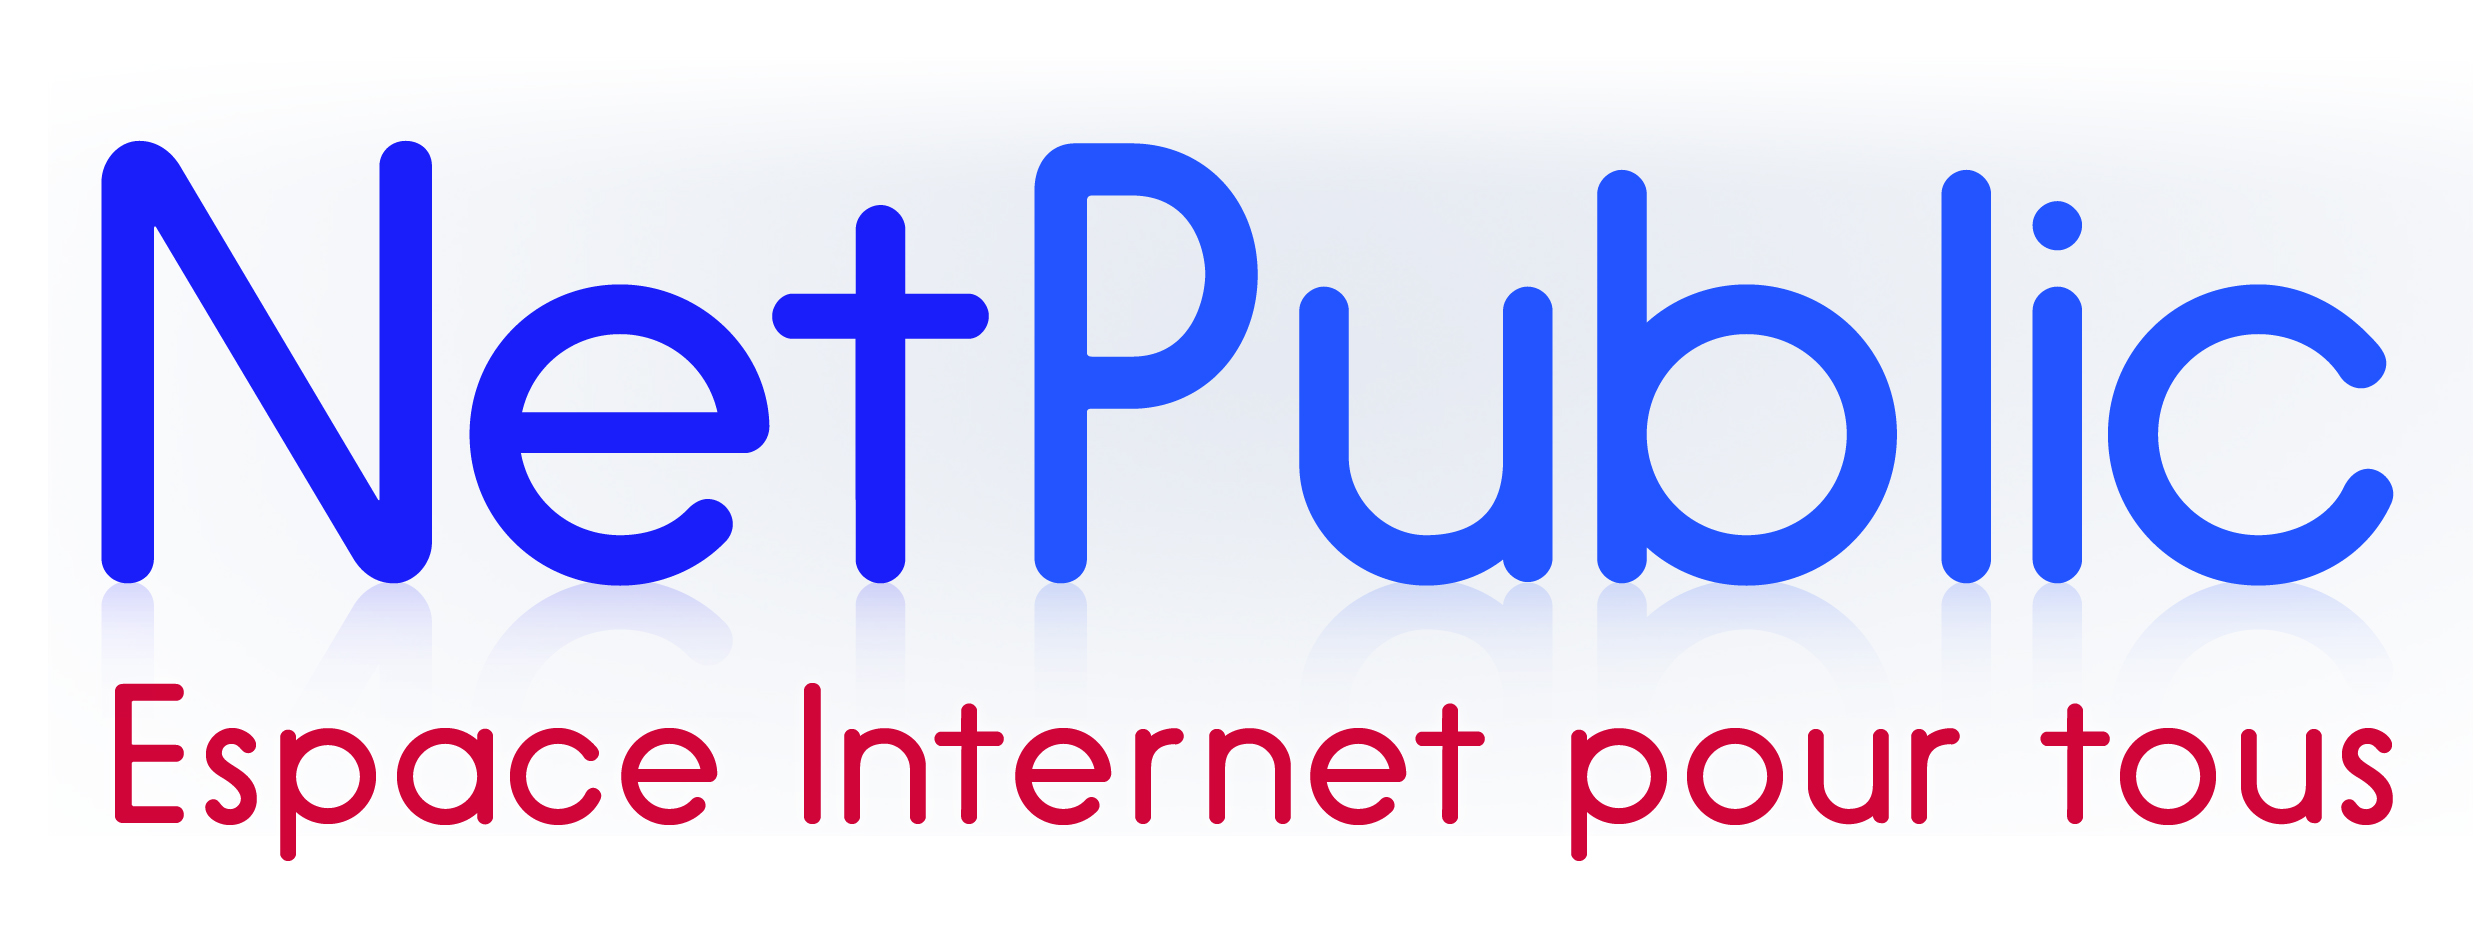 Net Public